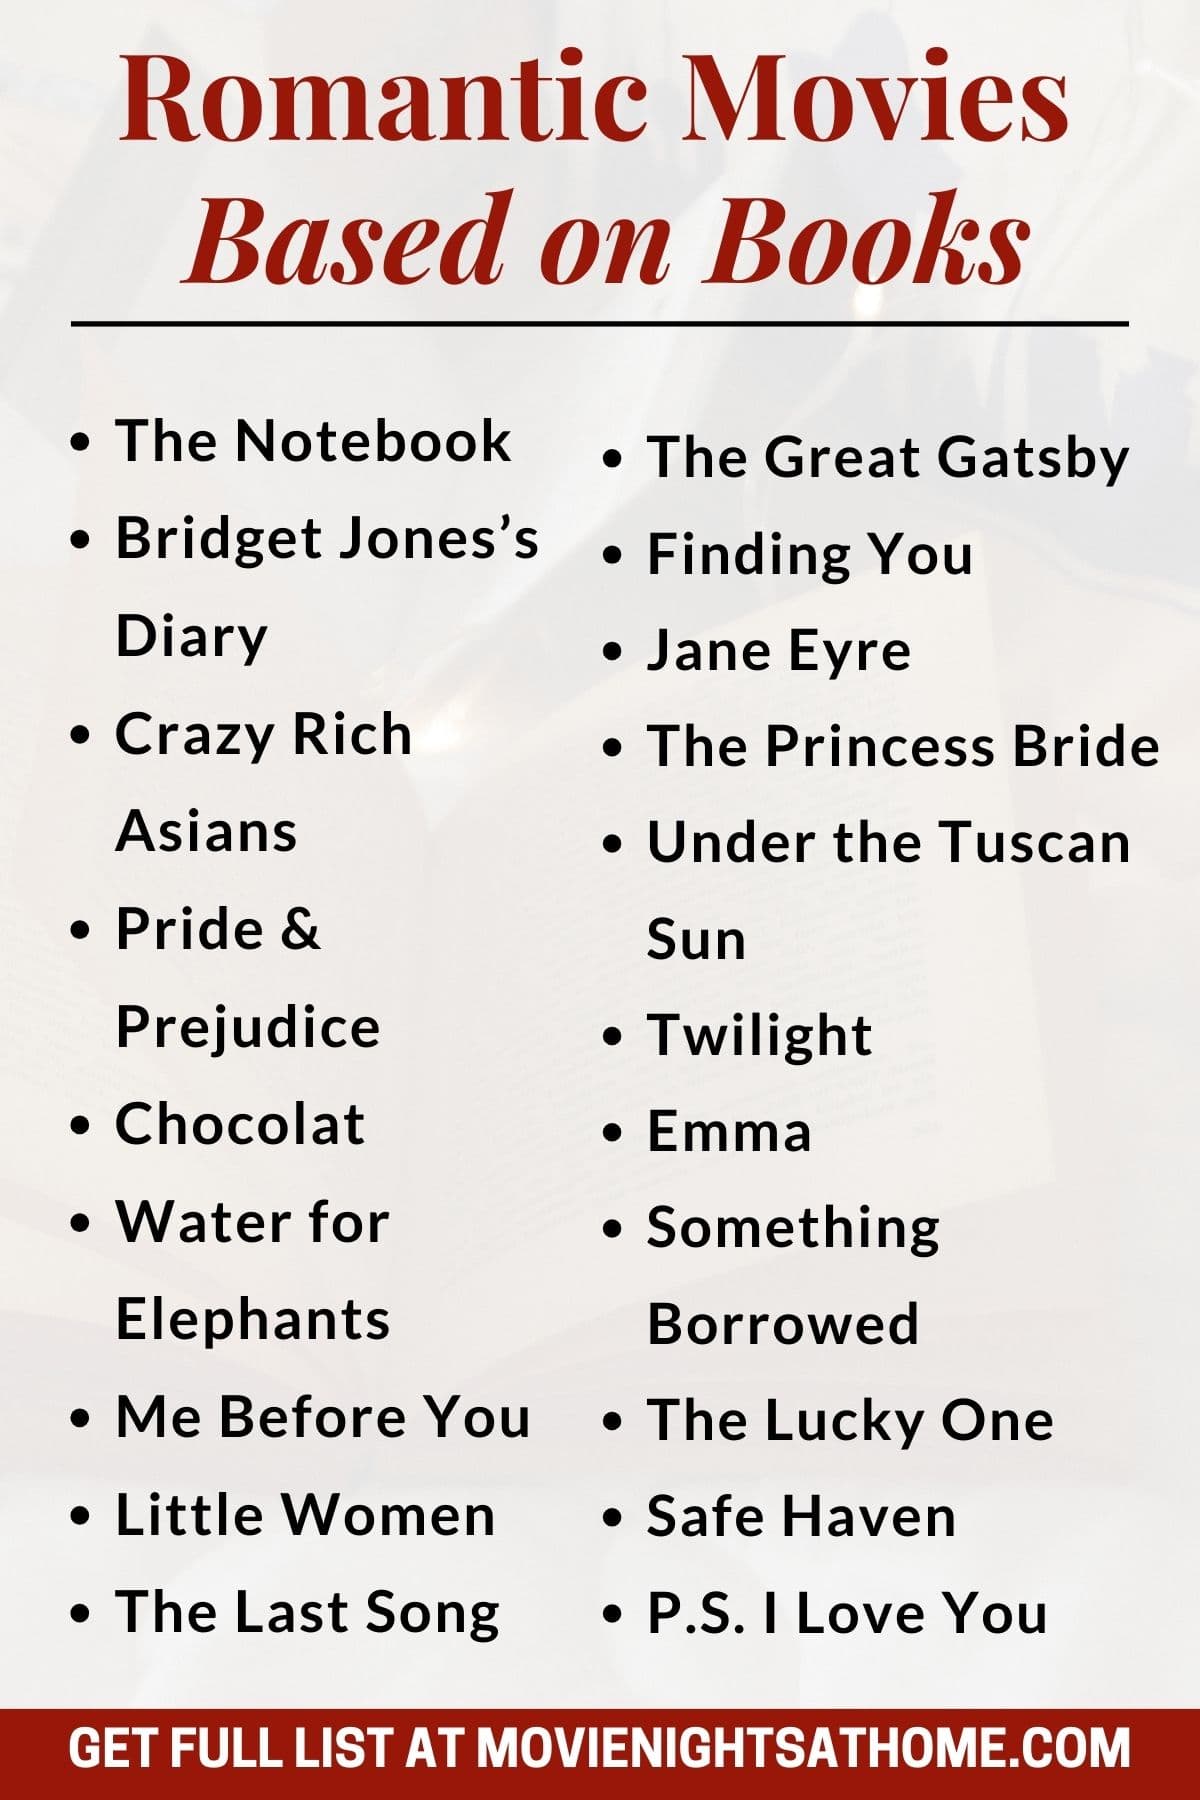 list of Romantic Movies Based on Books